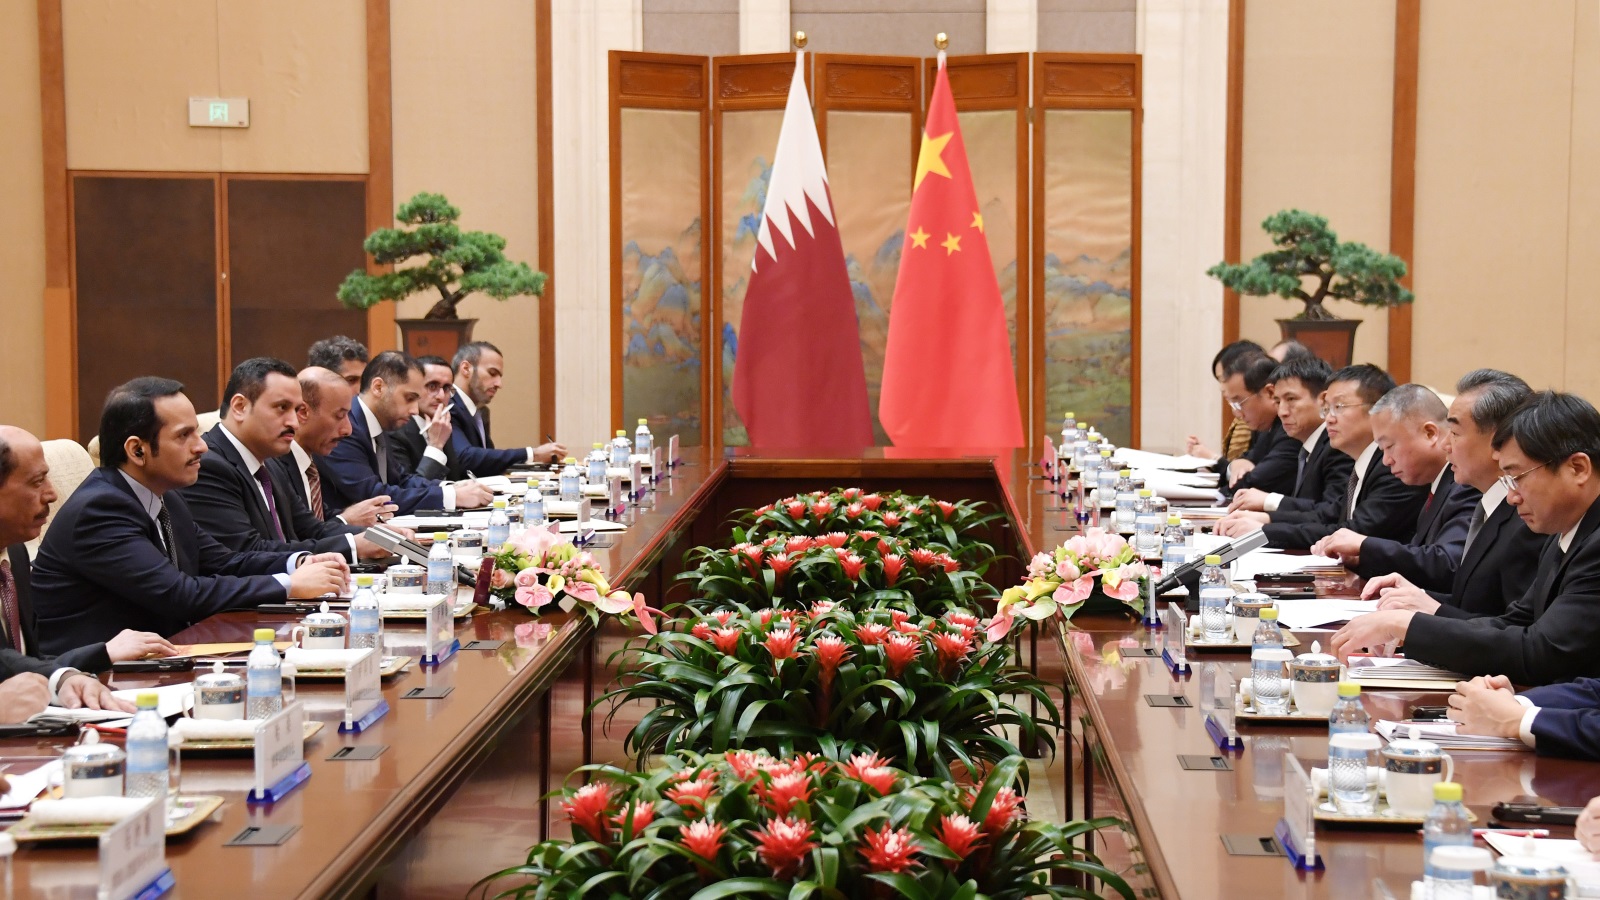 قطر قامت باستبدال أكثر من 86 مليار دولار من المعاملات، وأحلت محلها اليوان الصيني، ووقعت اتفاقيات أخرى مع الصين تشجع على زيادة التعاون الاقتصادي